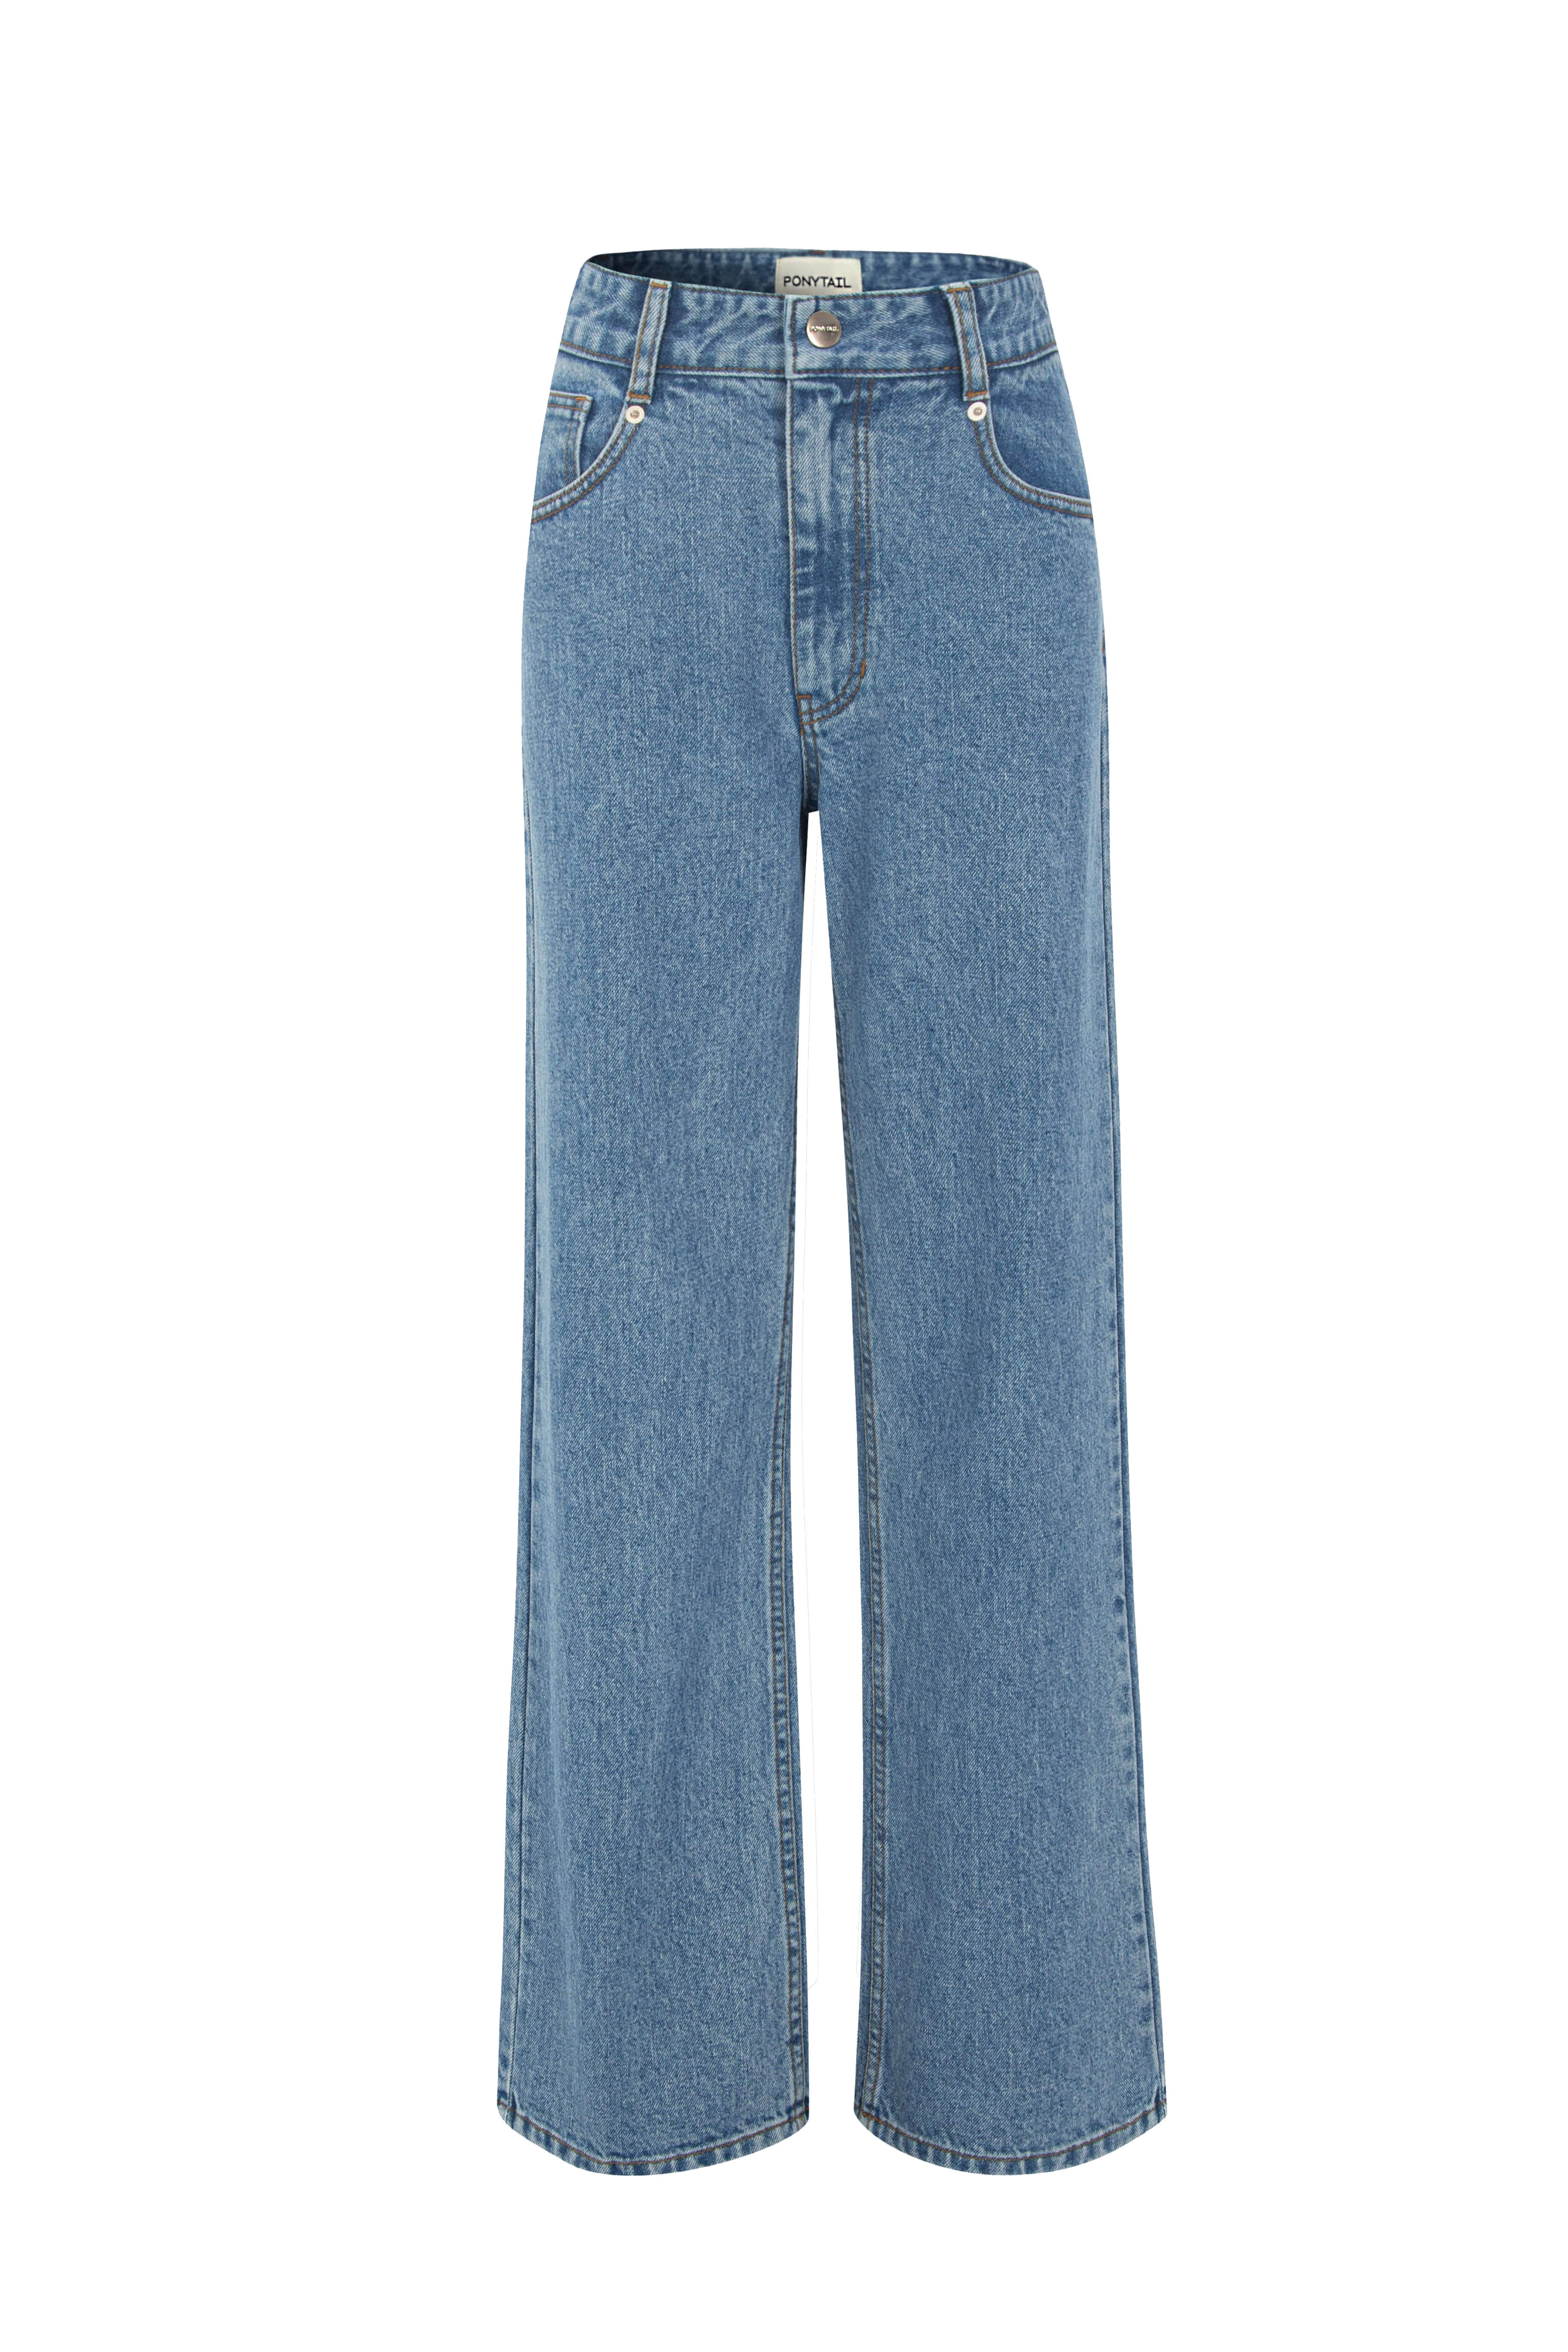 [3차 Pre-Order 5/20 오픈 예정] BELLA Loose-fit Jeans (Medium Blue) - 포니테일